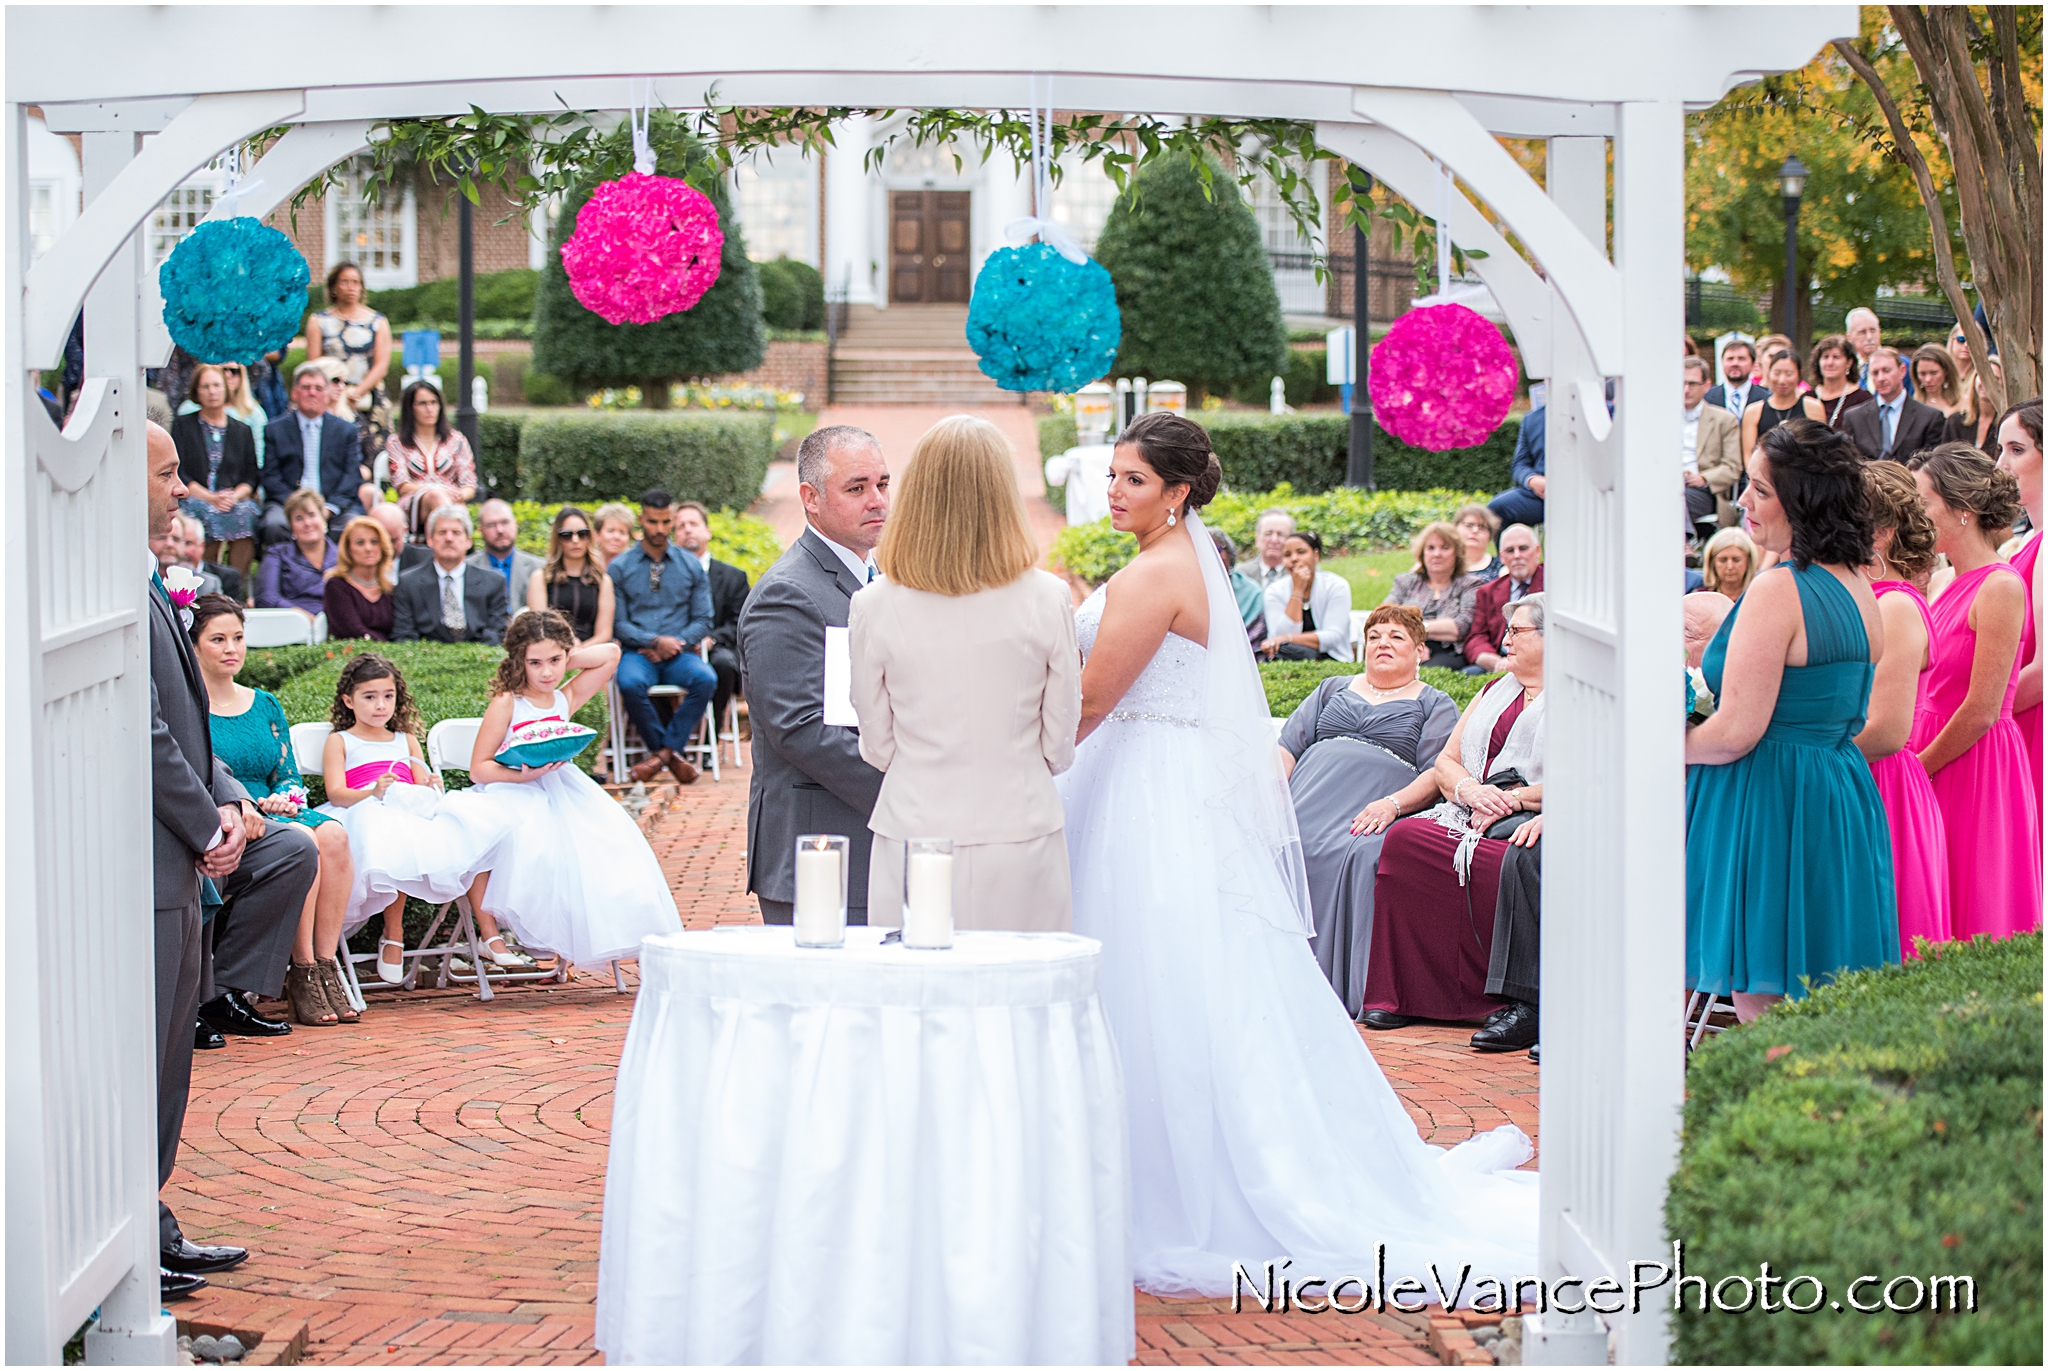 Wedding ceremony at Virginia Crossings.